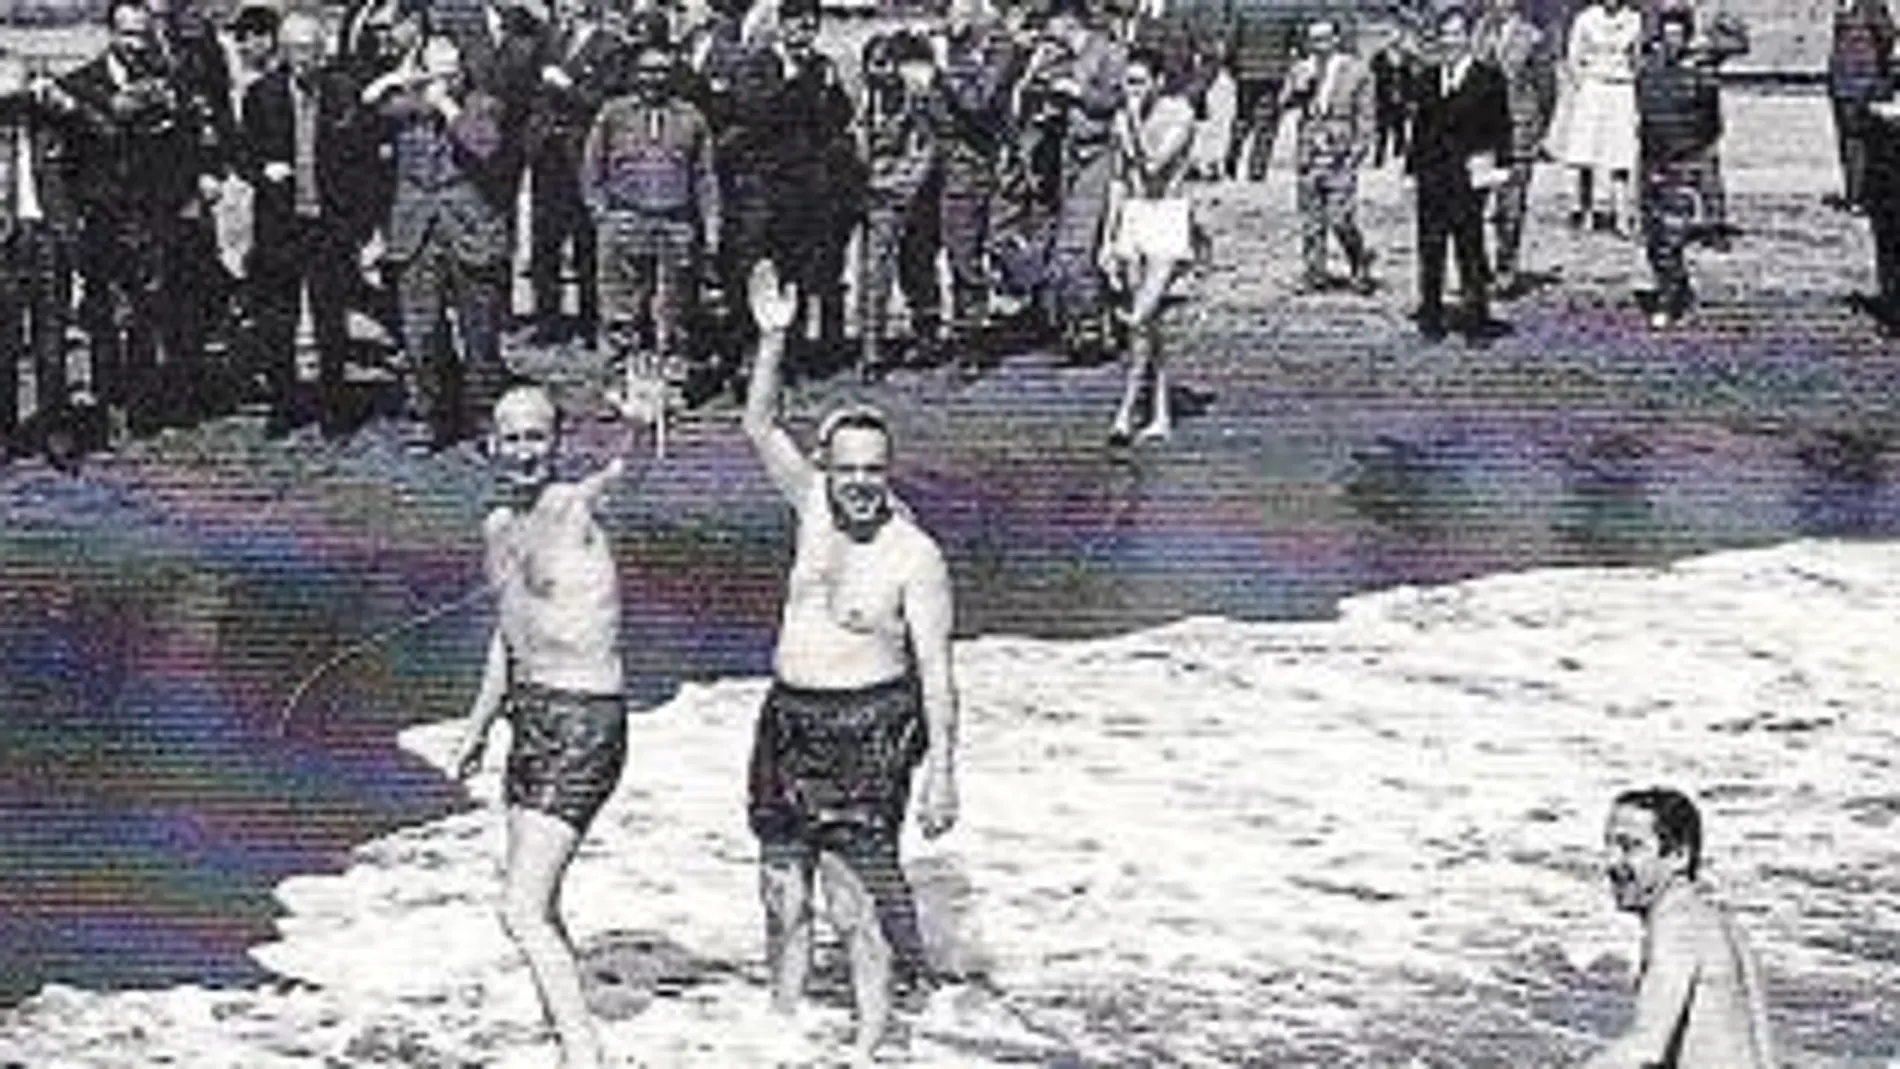 07 - marzo - 1966 Manuel Fraga se baña en la playa para acallar rumores